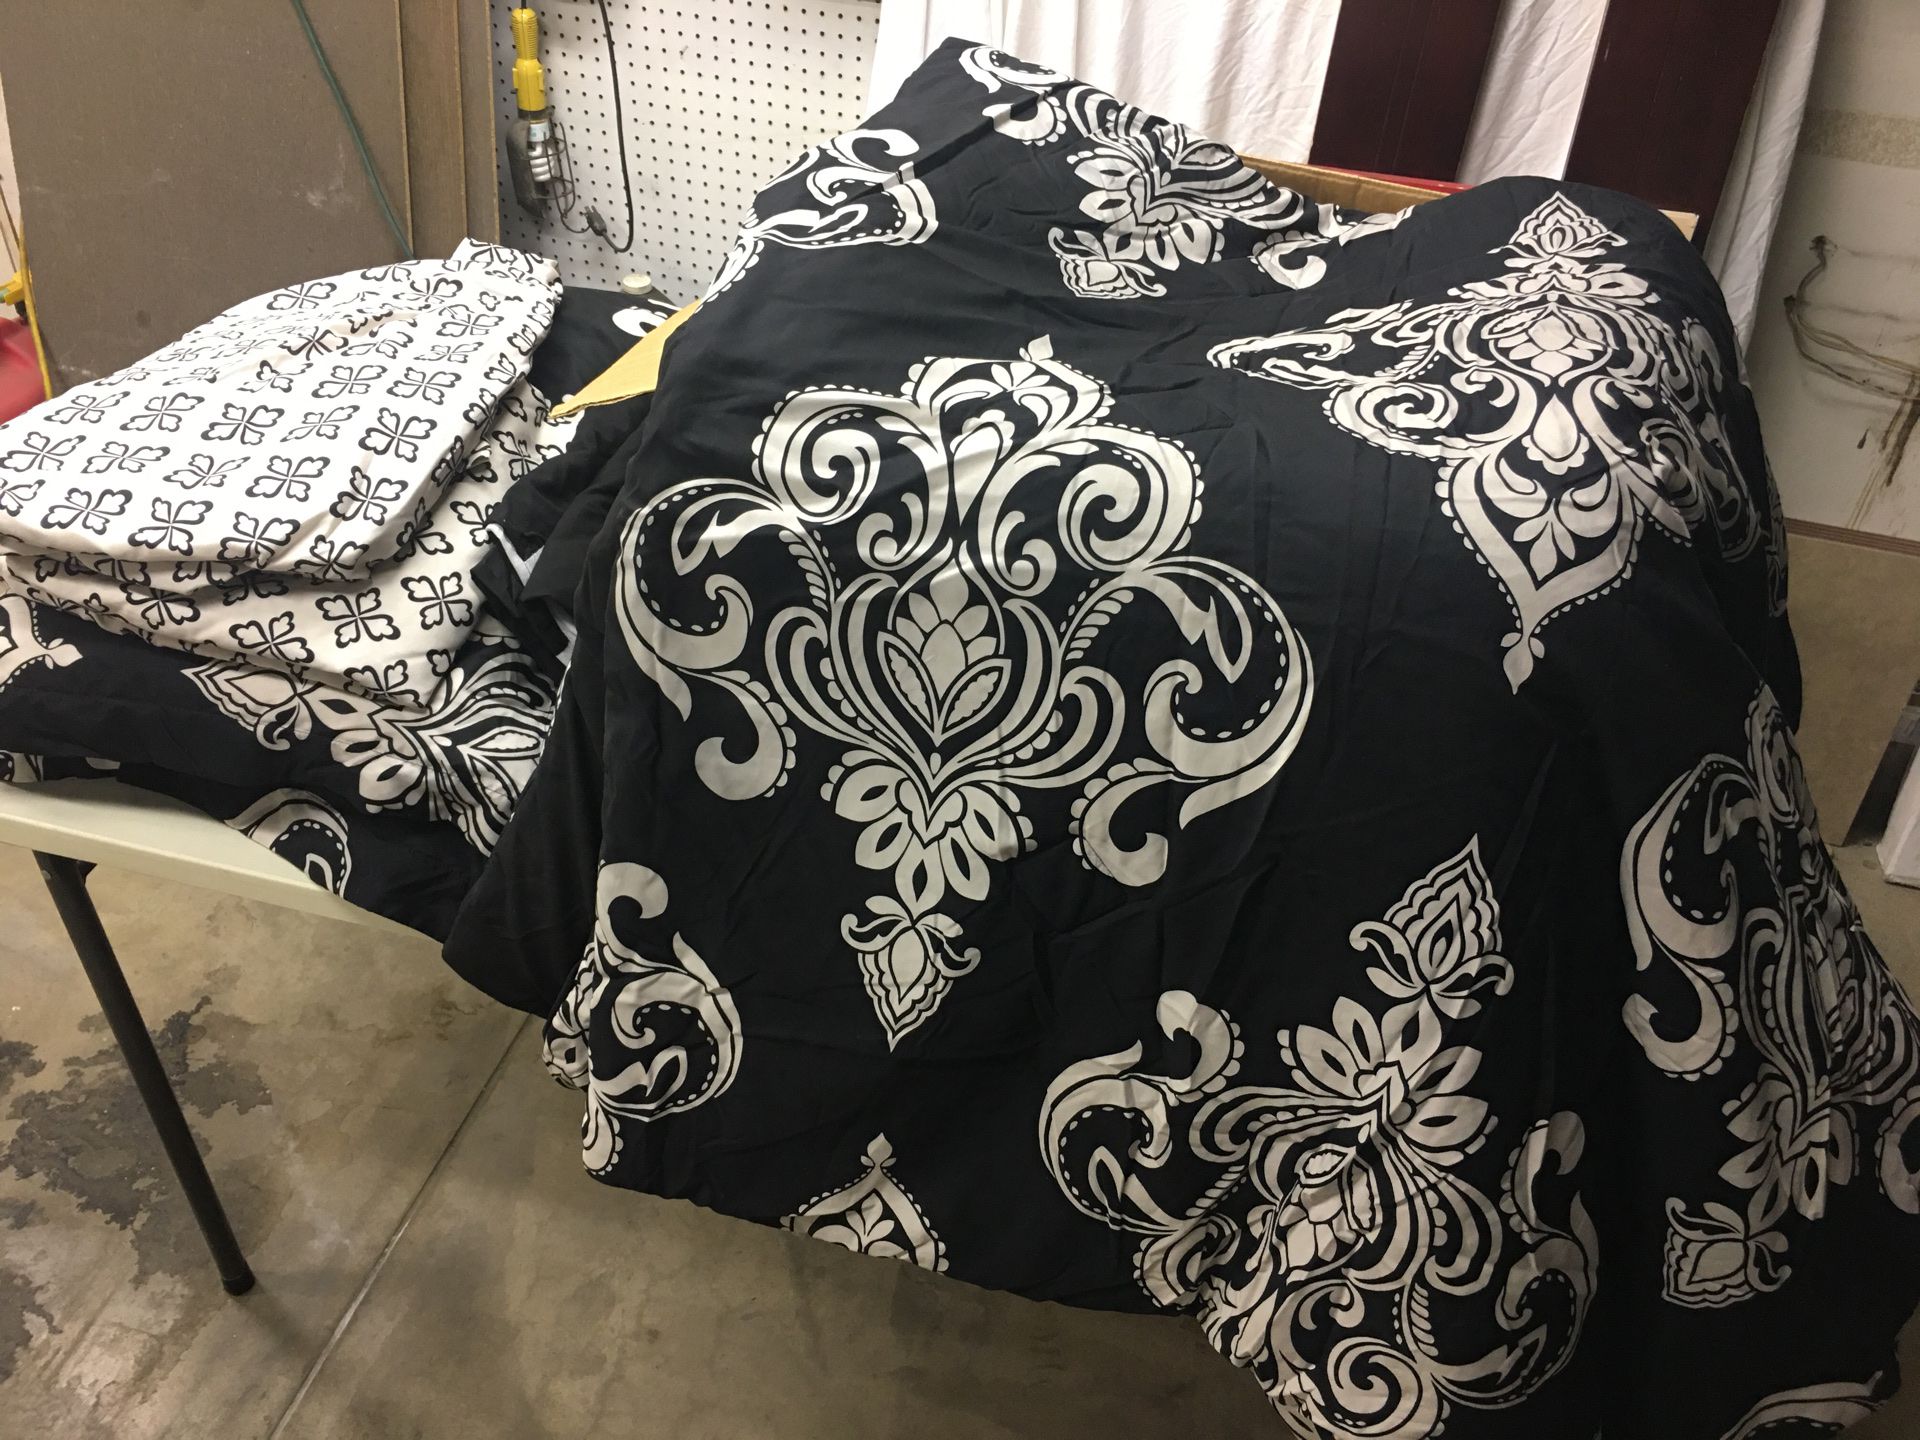 Queen comforter and sheet set